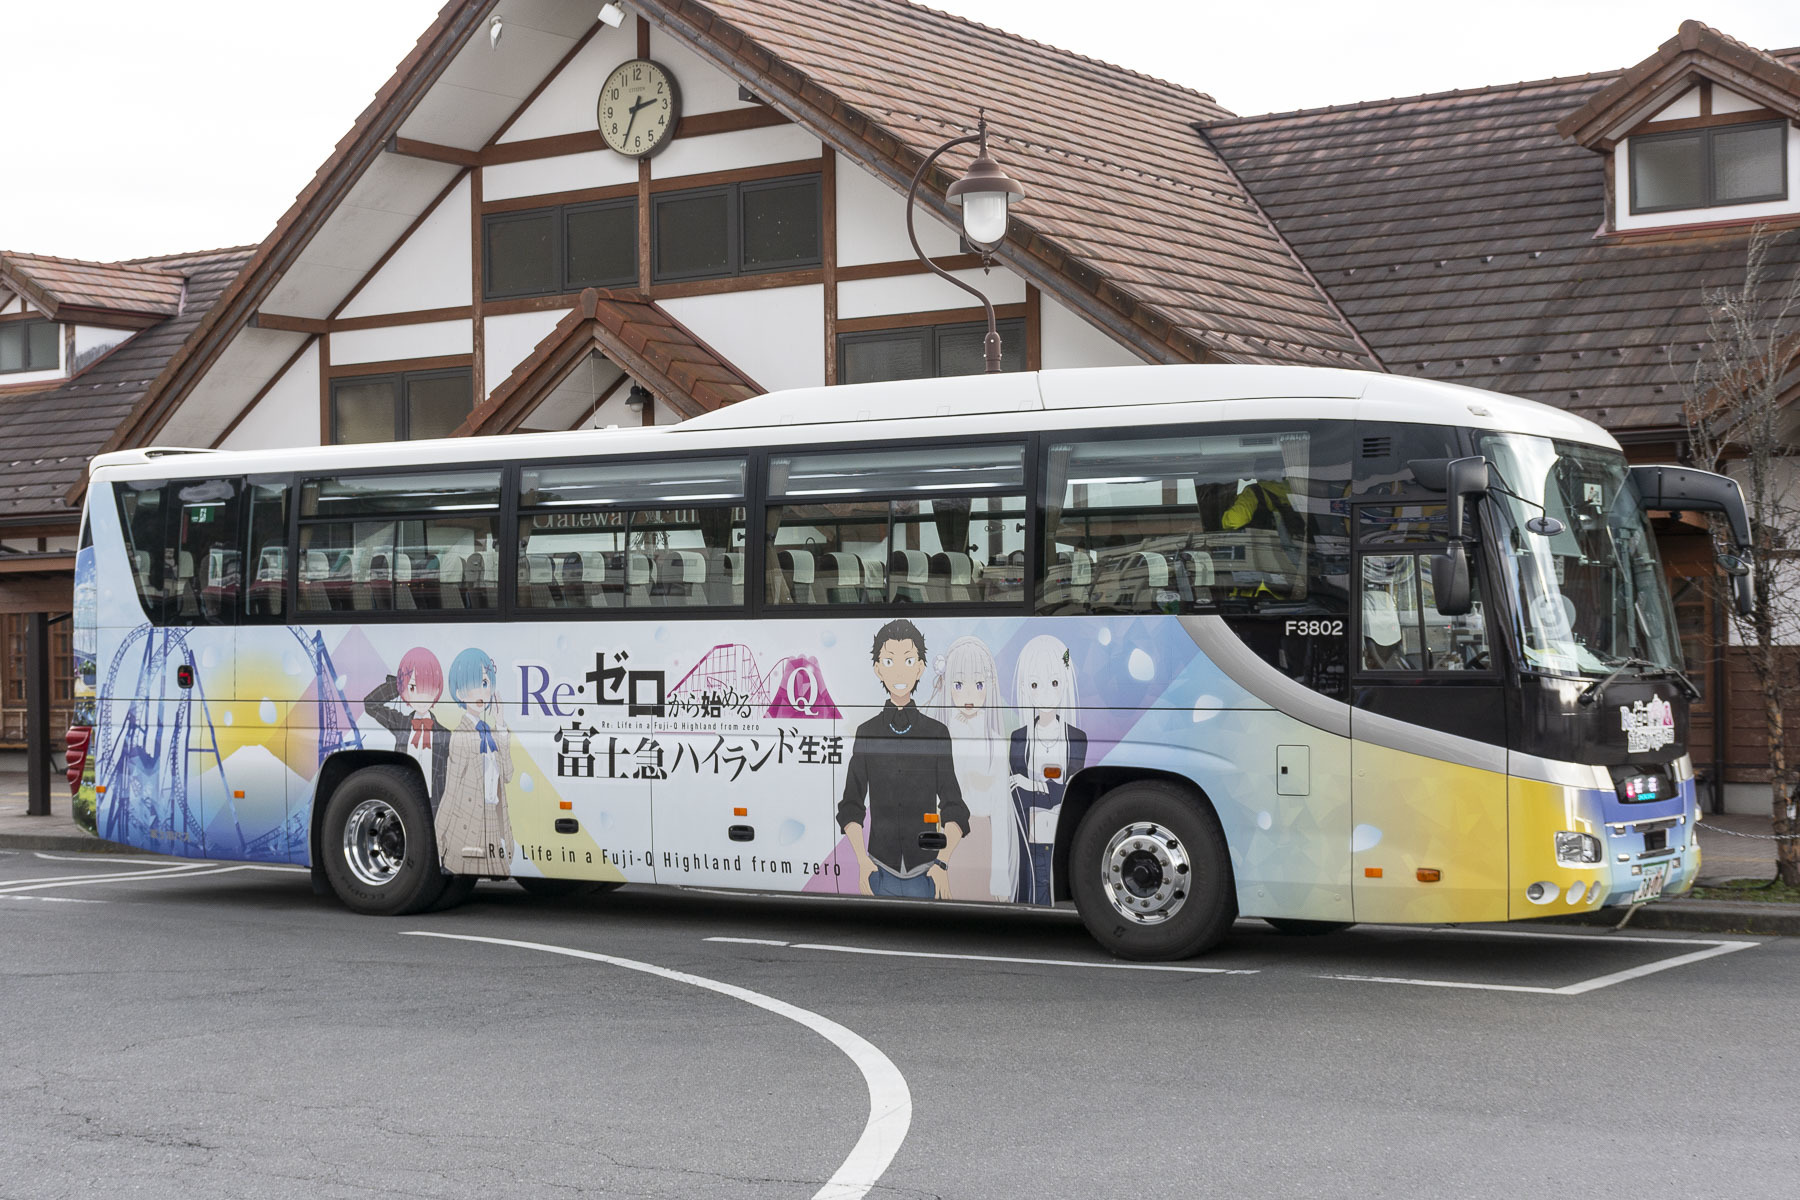 富士急バス / Re:ゼロから始める富士急ハイランド生活ラッピングバス_d0226909_16064792.jpg